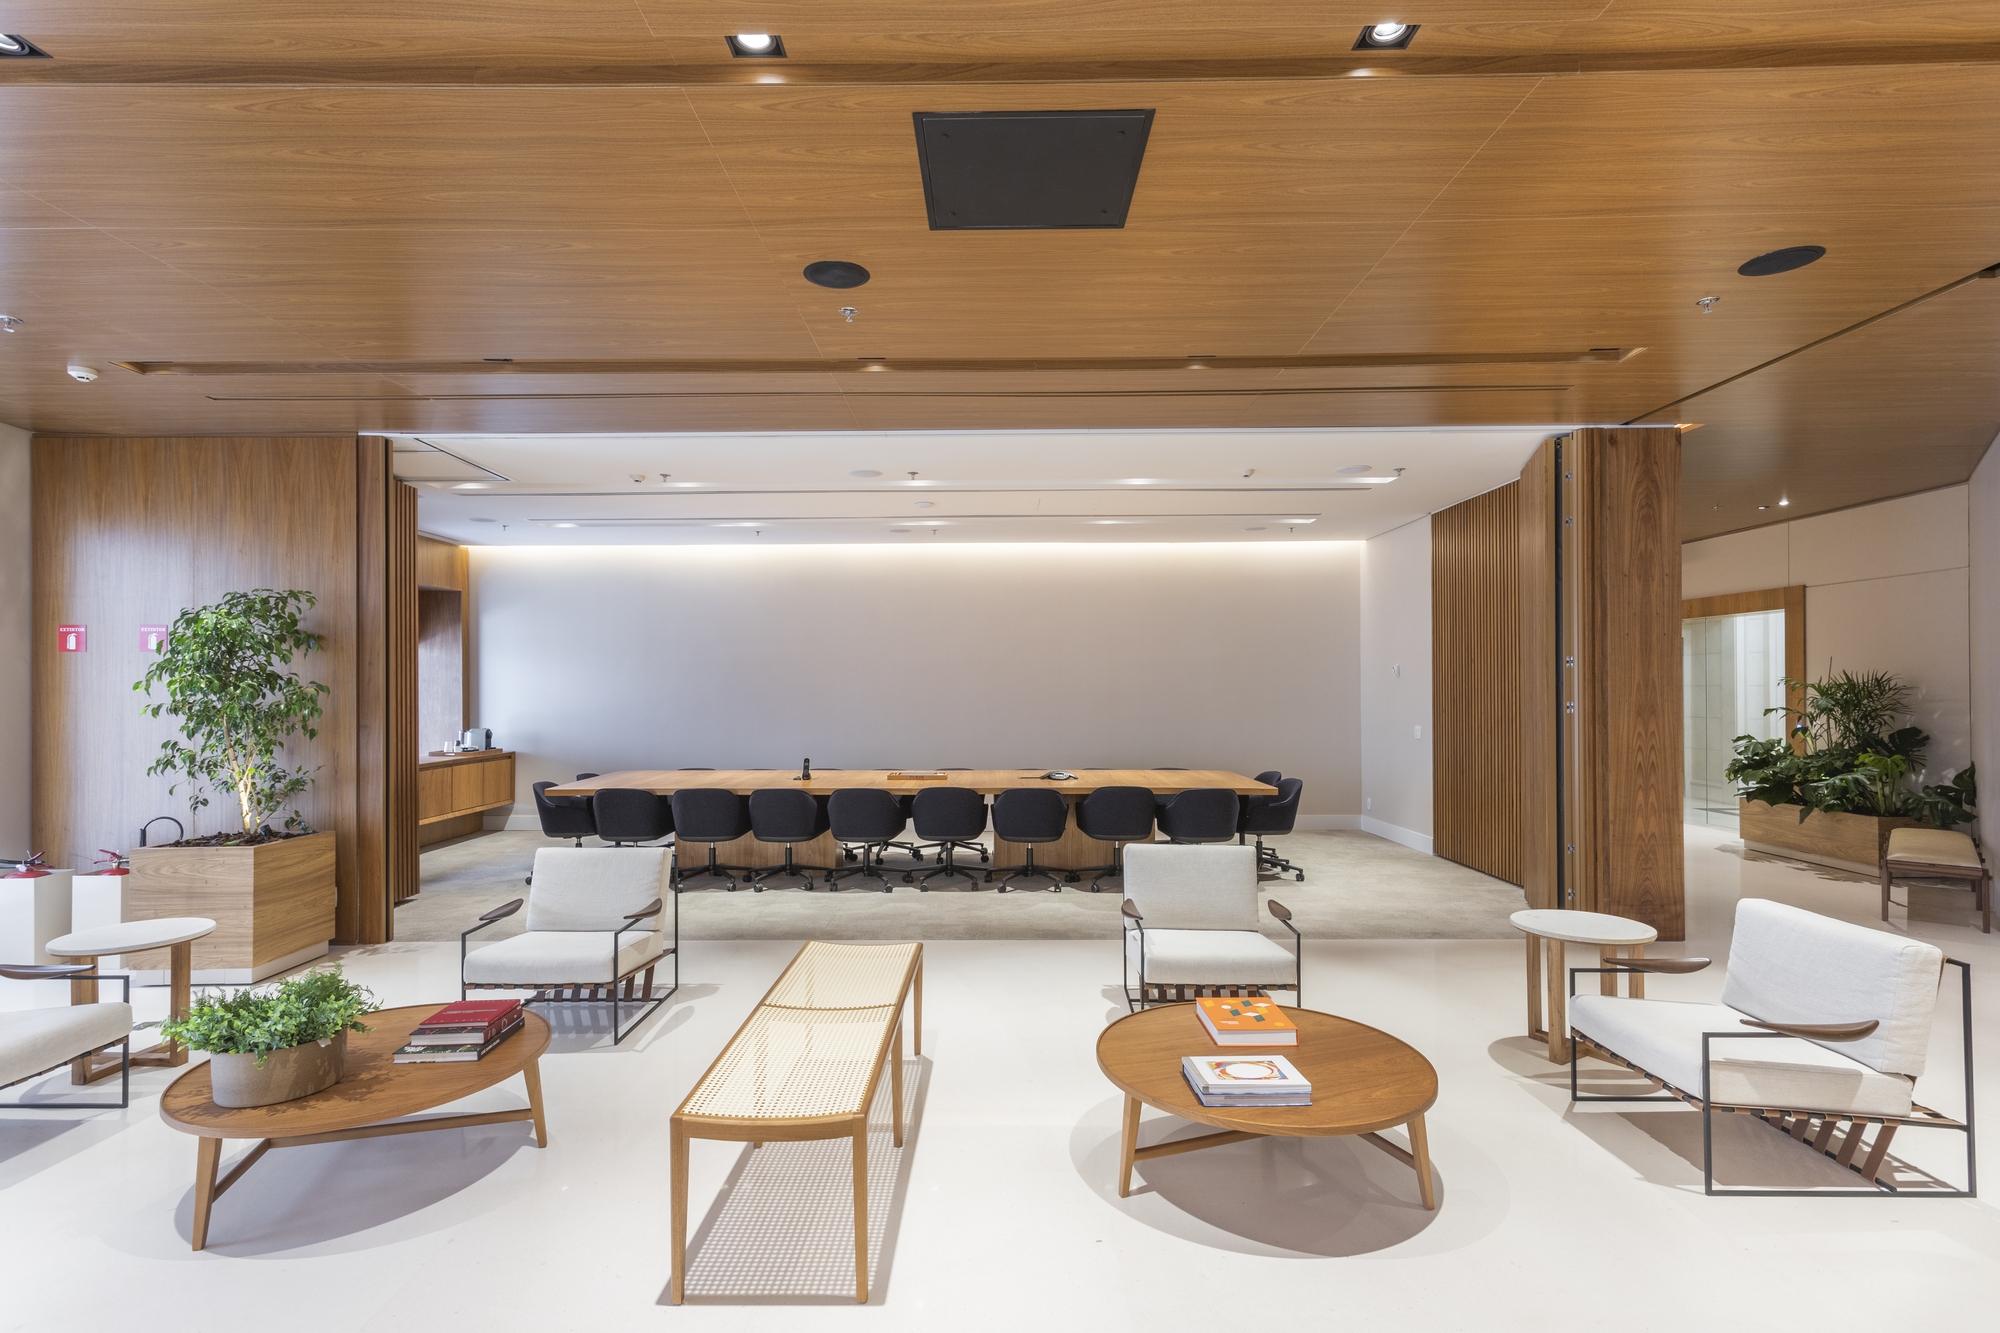 图片[5]|Turim MFO办公室——圣保罗|ART-Arrakis | 建筑室内设计的创新与灵感